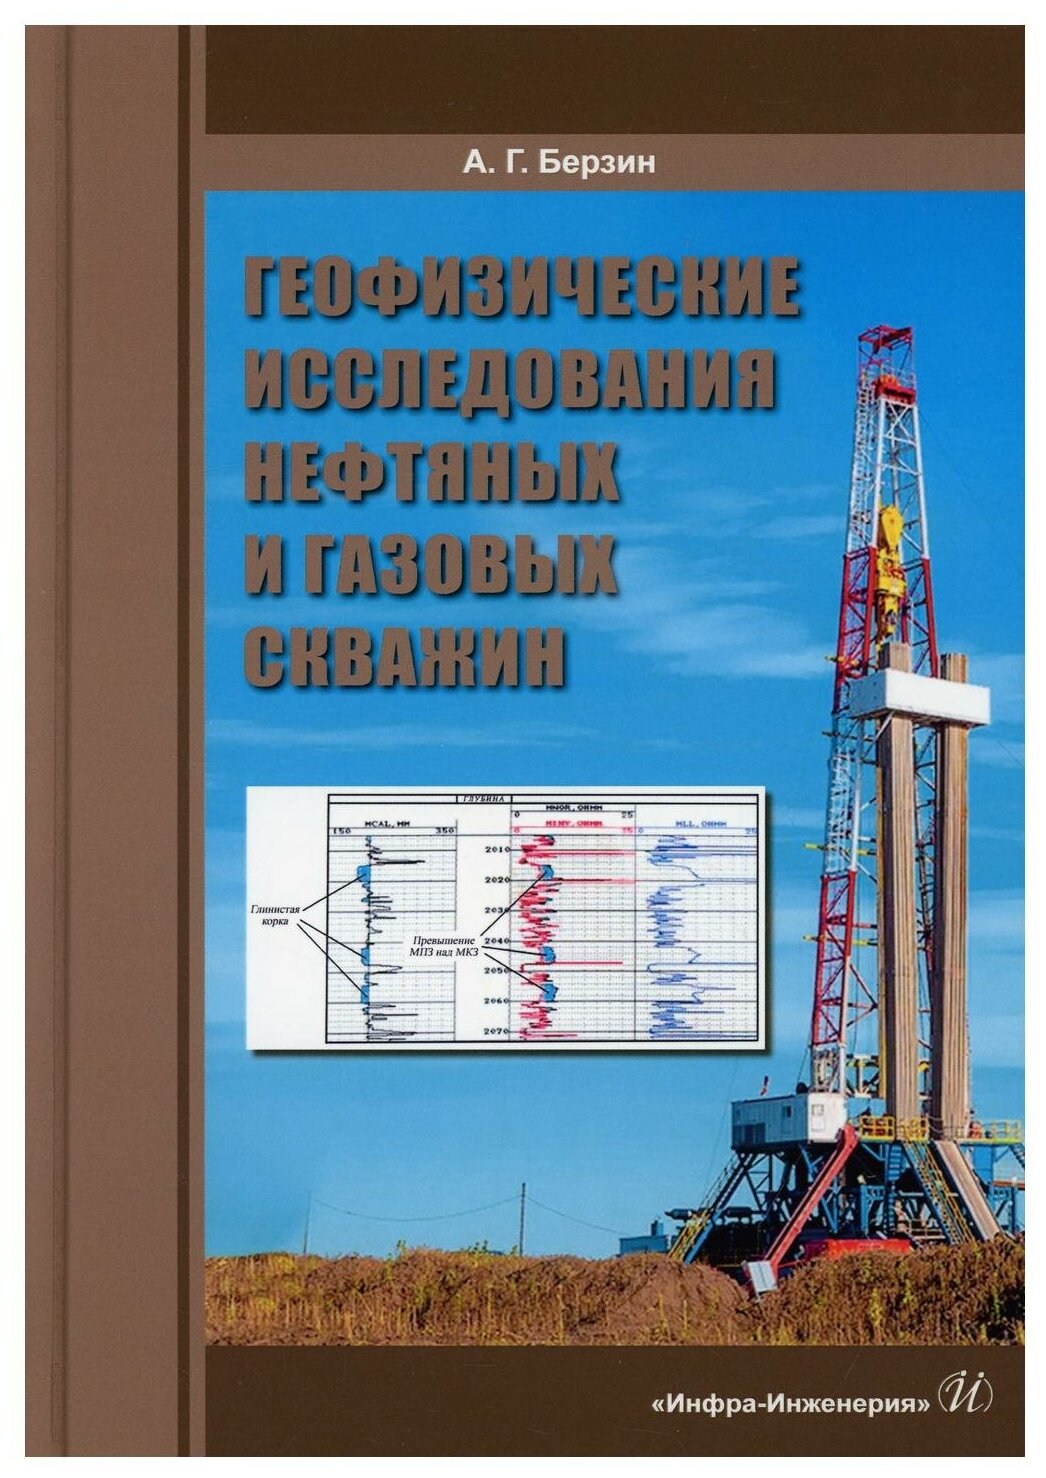 Геофизические исследования нефтяных и газовых скважин - фото №1